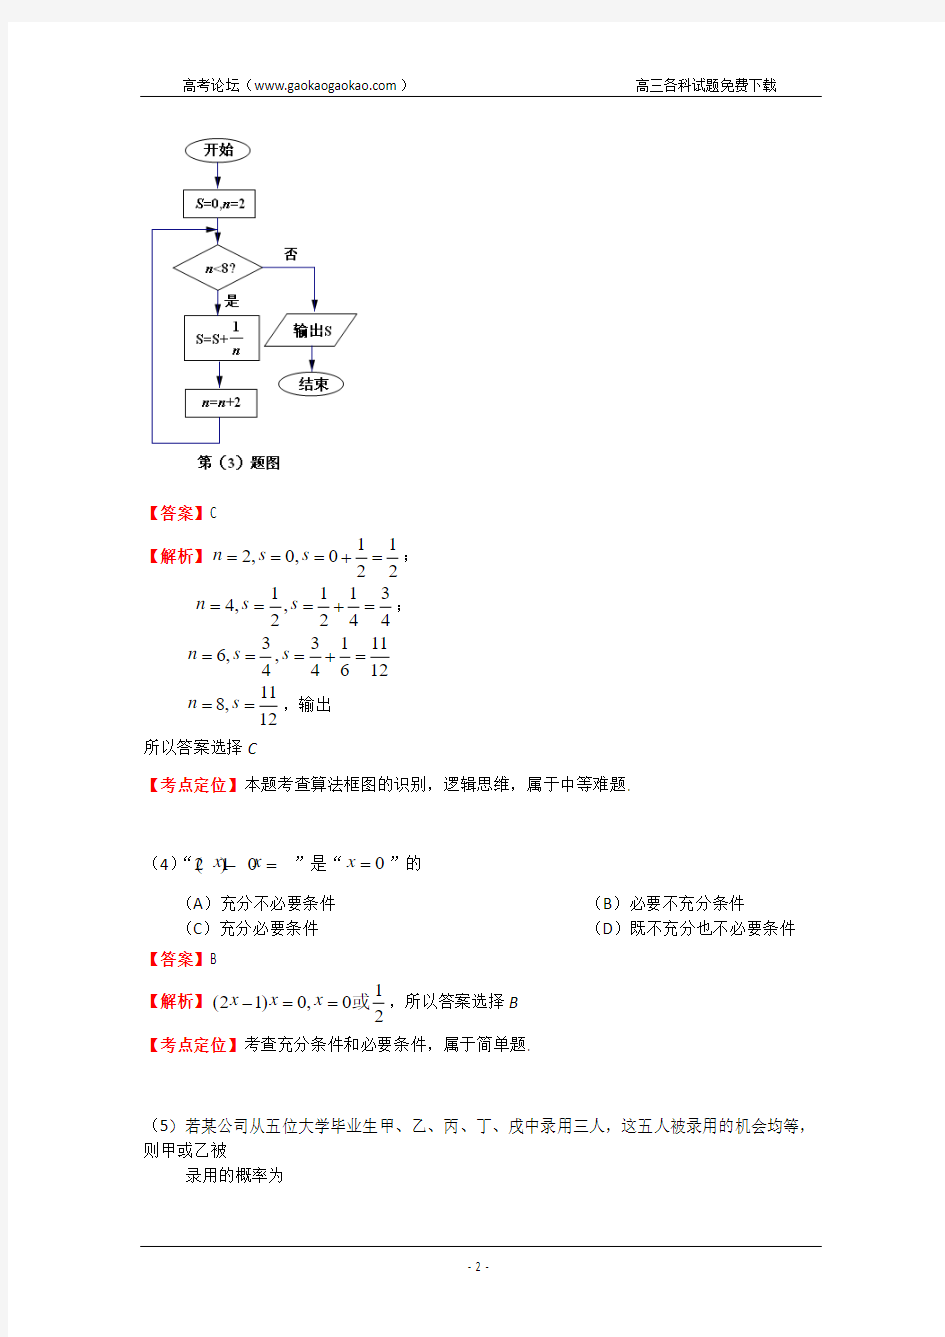 2013年高考真题——文科数学(安徽卷)解析 Word版含答案